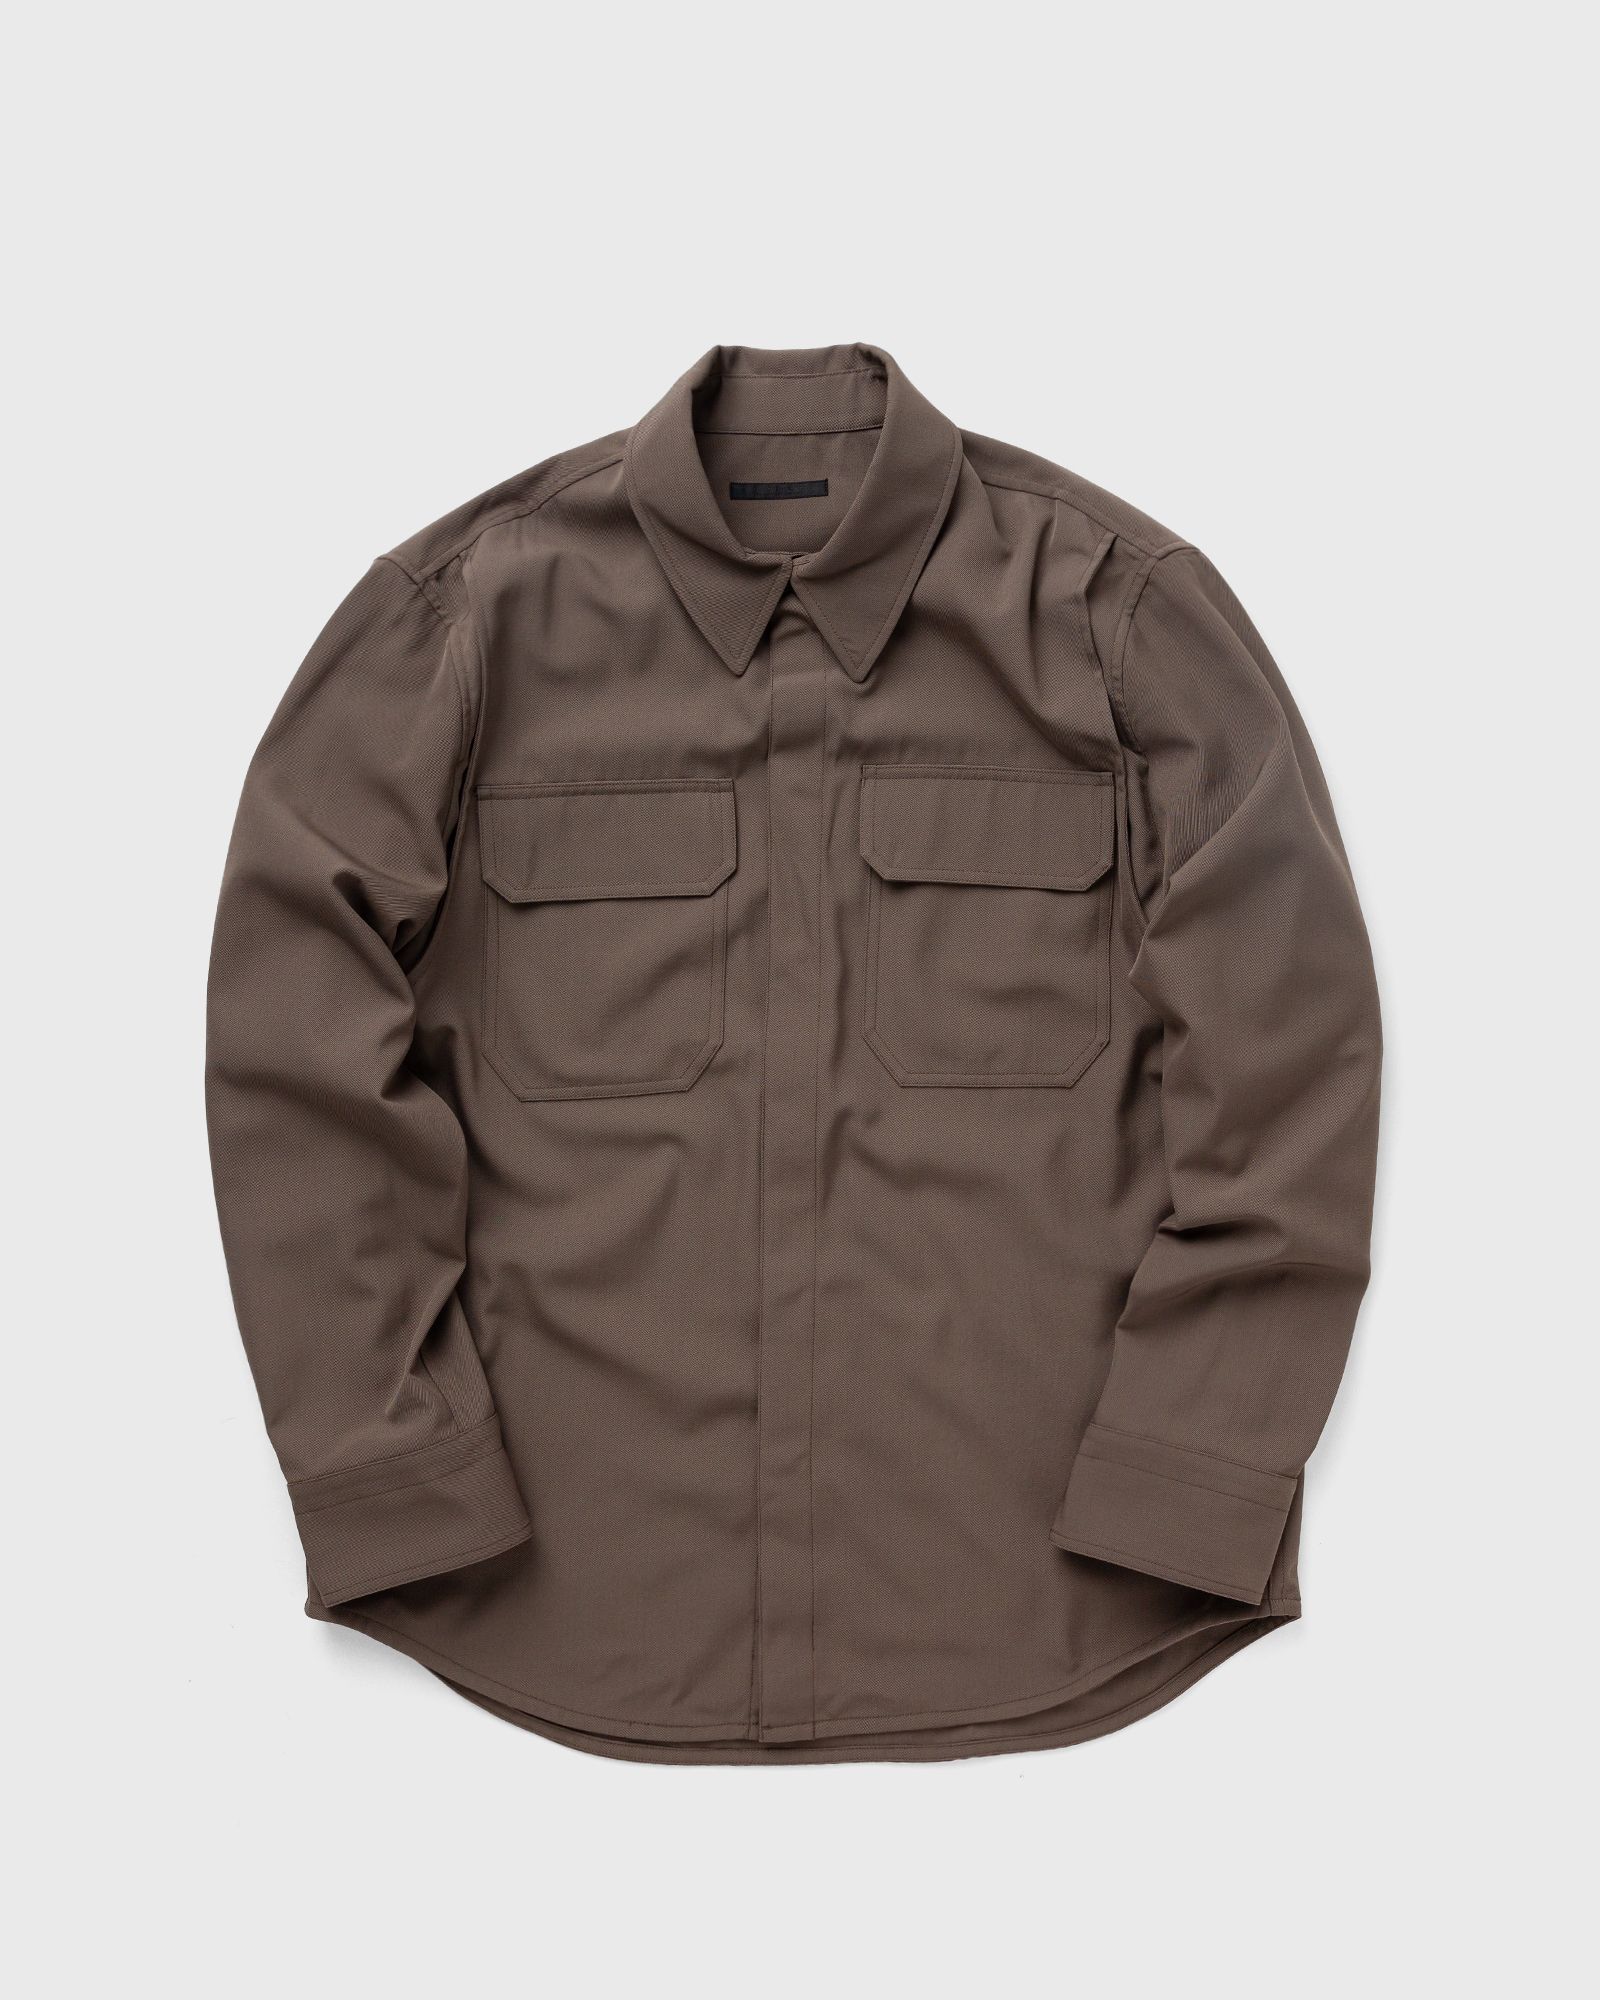 Helmut Lang - military shirt men longsleeves brown in größe:xl